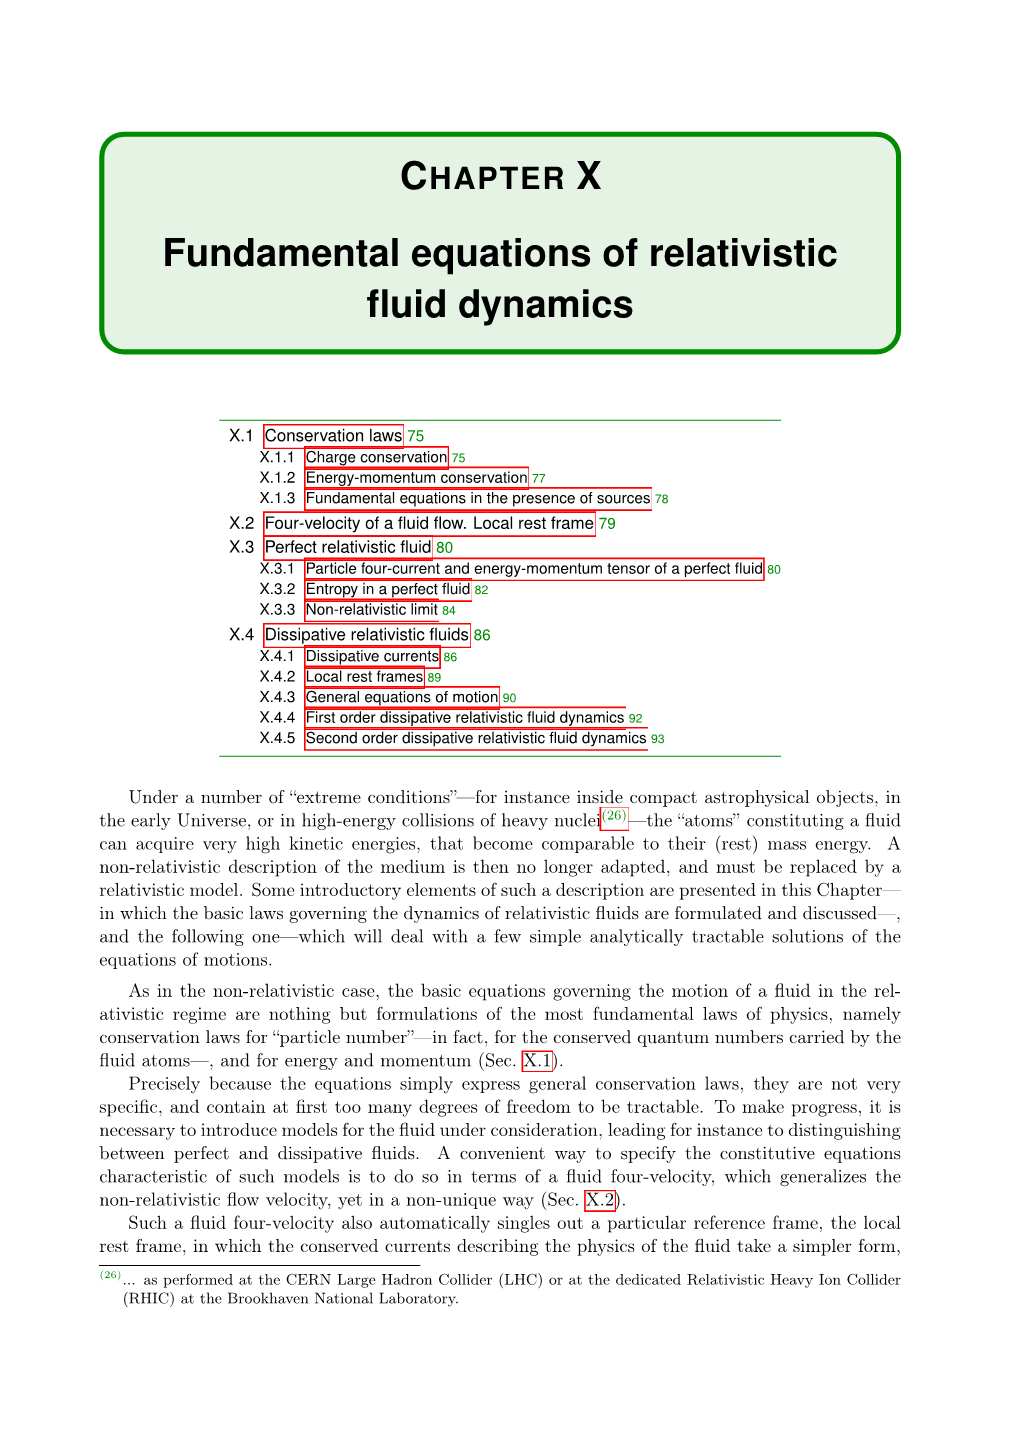 Fundamental Equations of Relativistic Fluid Dynamics